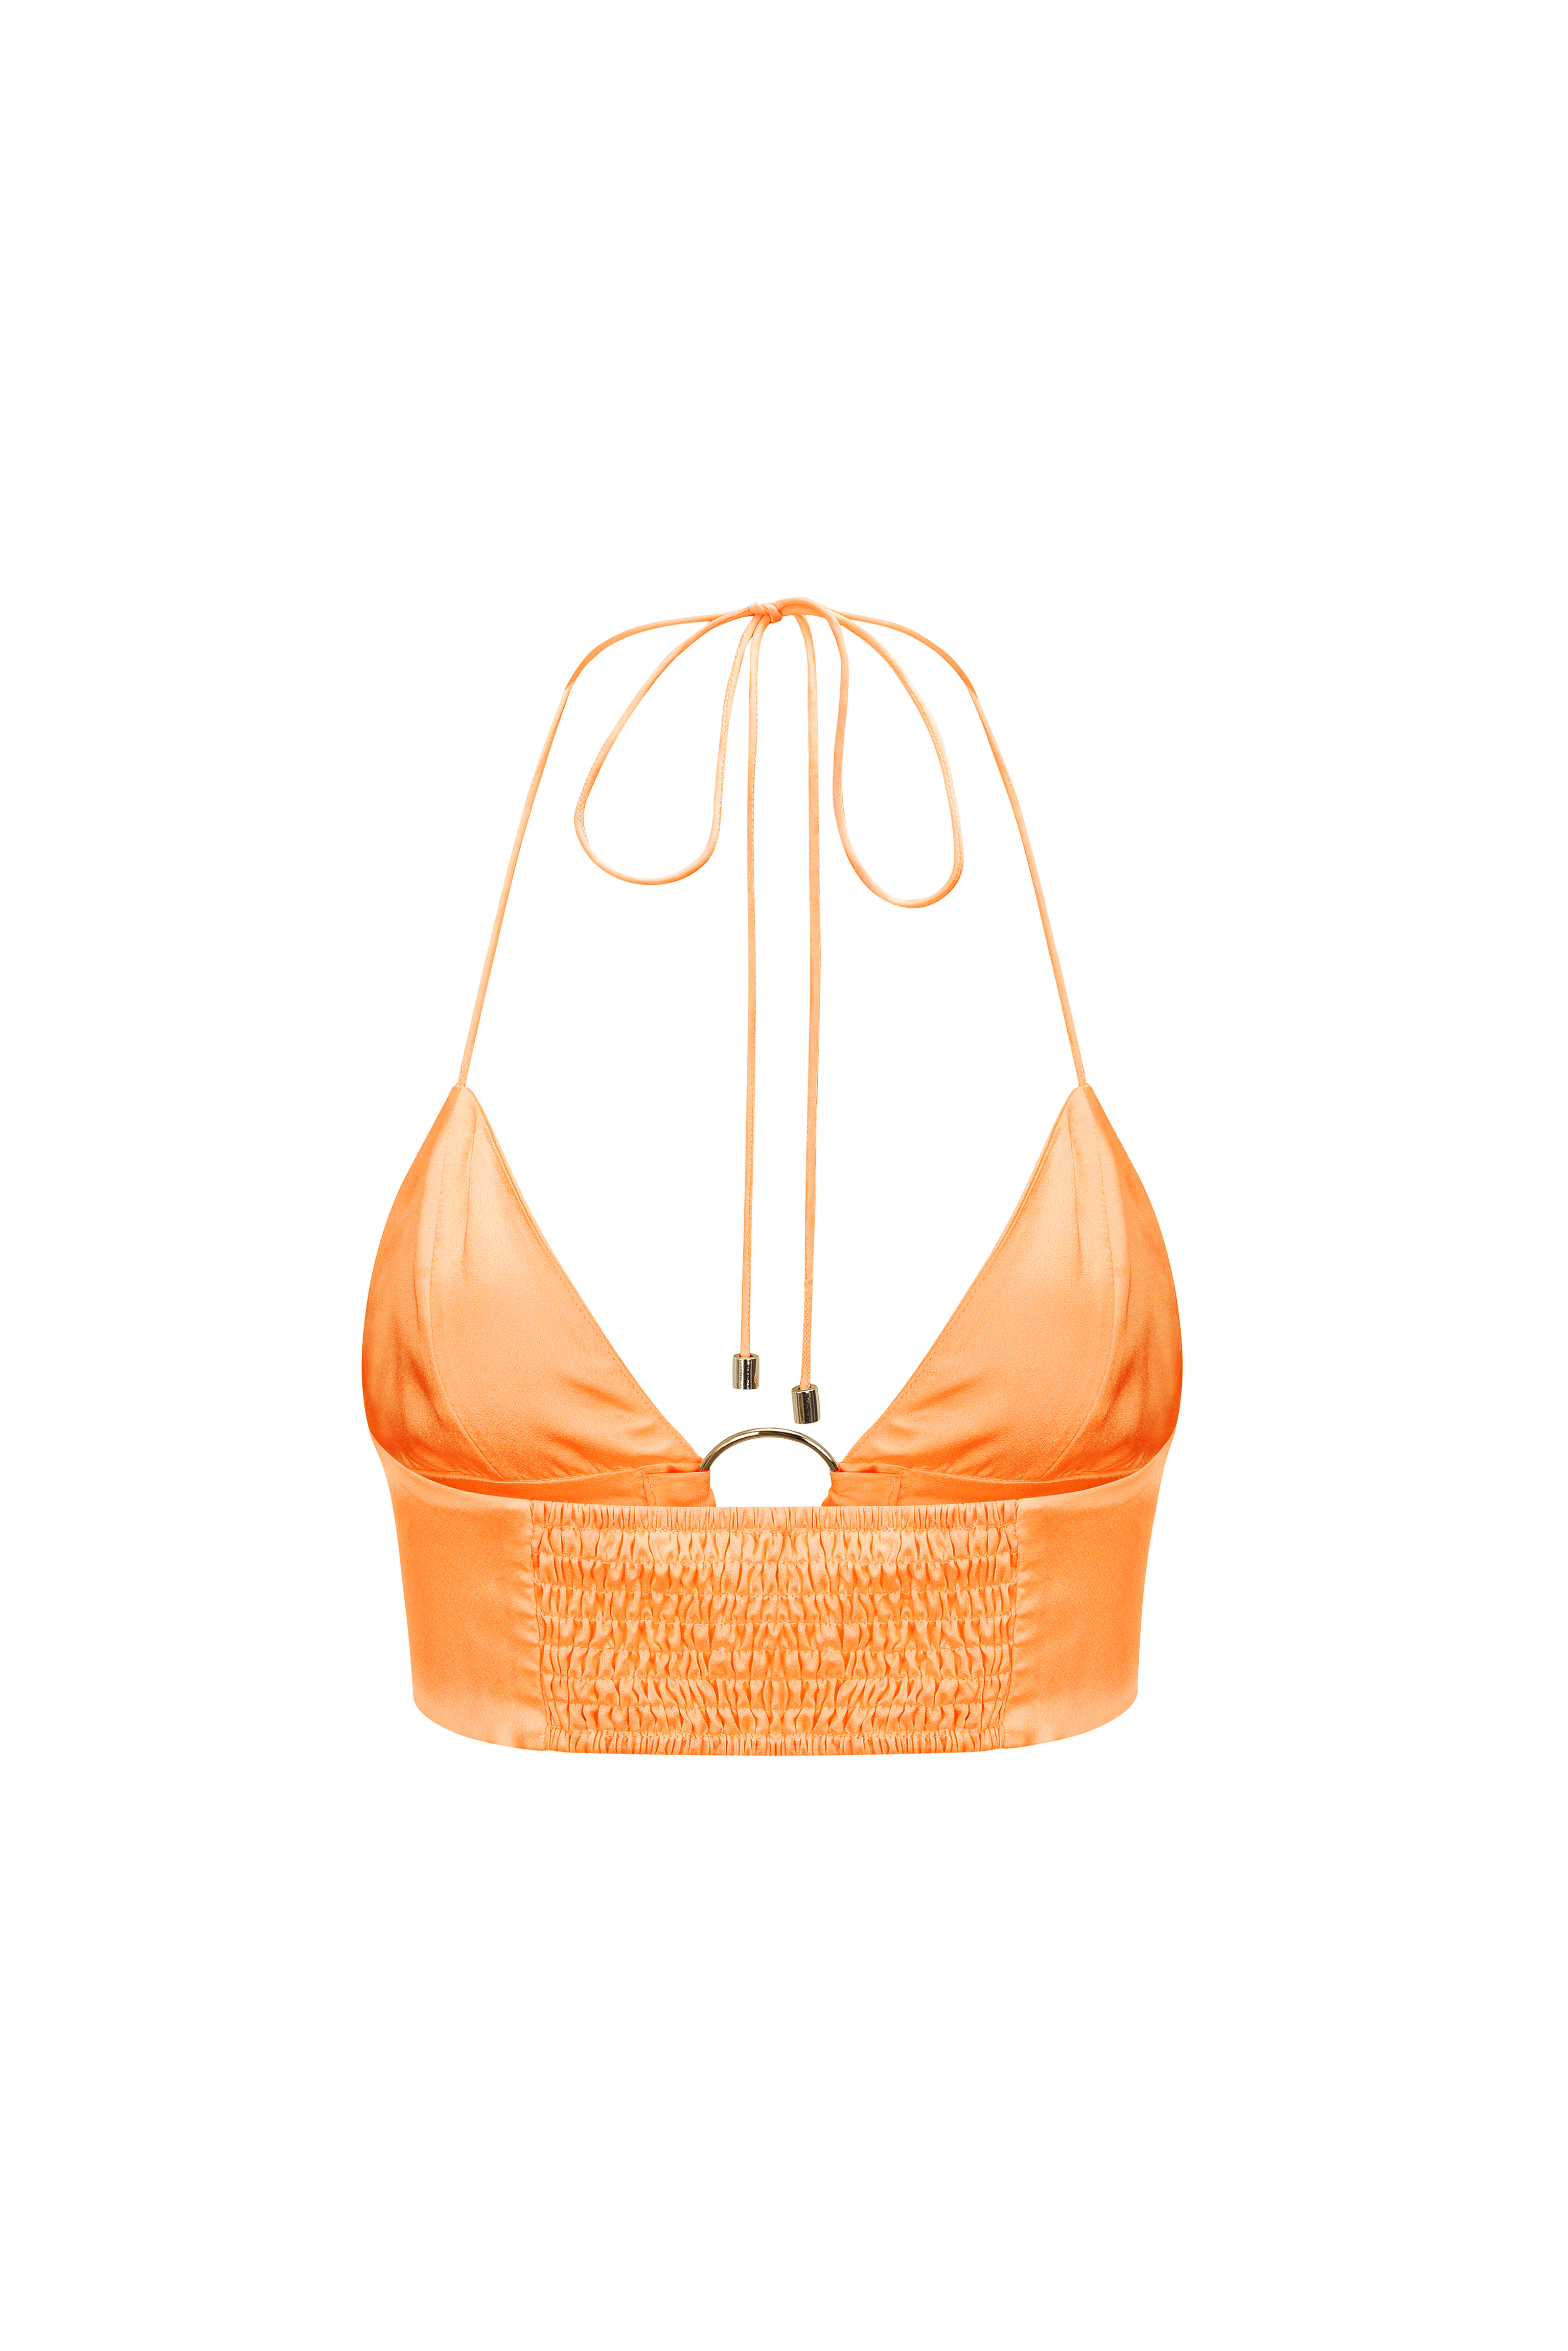 Ibiza Peach Orange Satin Halter-neck Bralette Crop Top | AMYLYNN